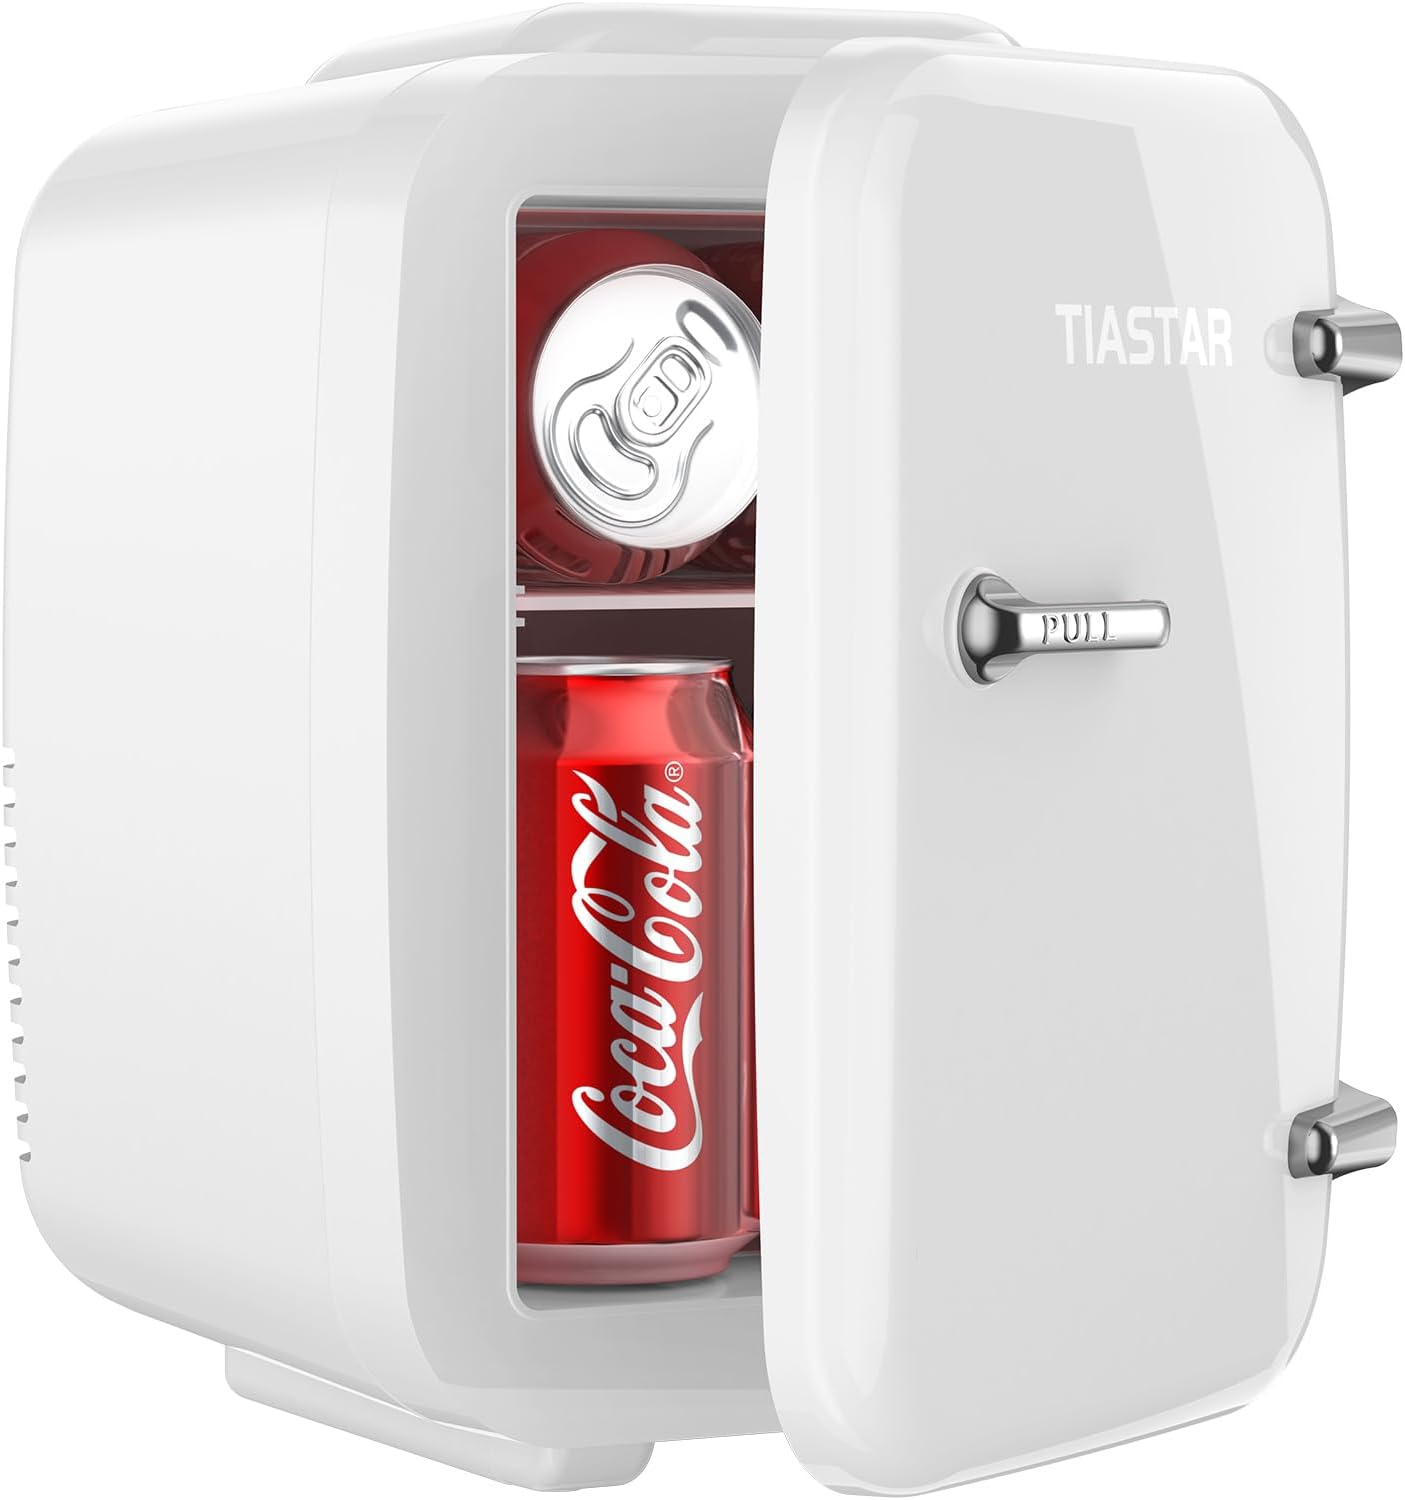 titre 1 avis sur le tiastar mini frigo portable 4 litres 6 boites boissons soin de la peau